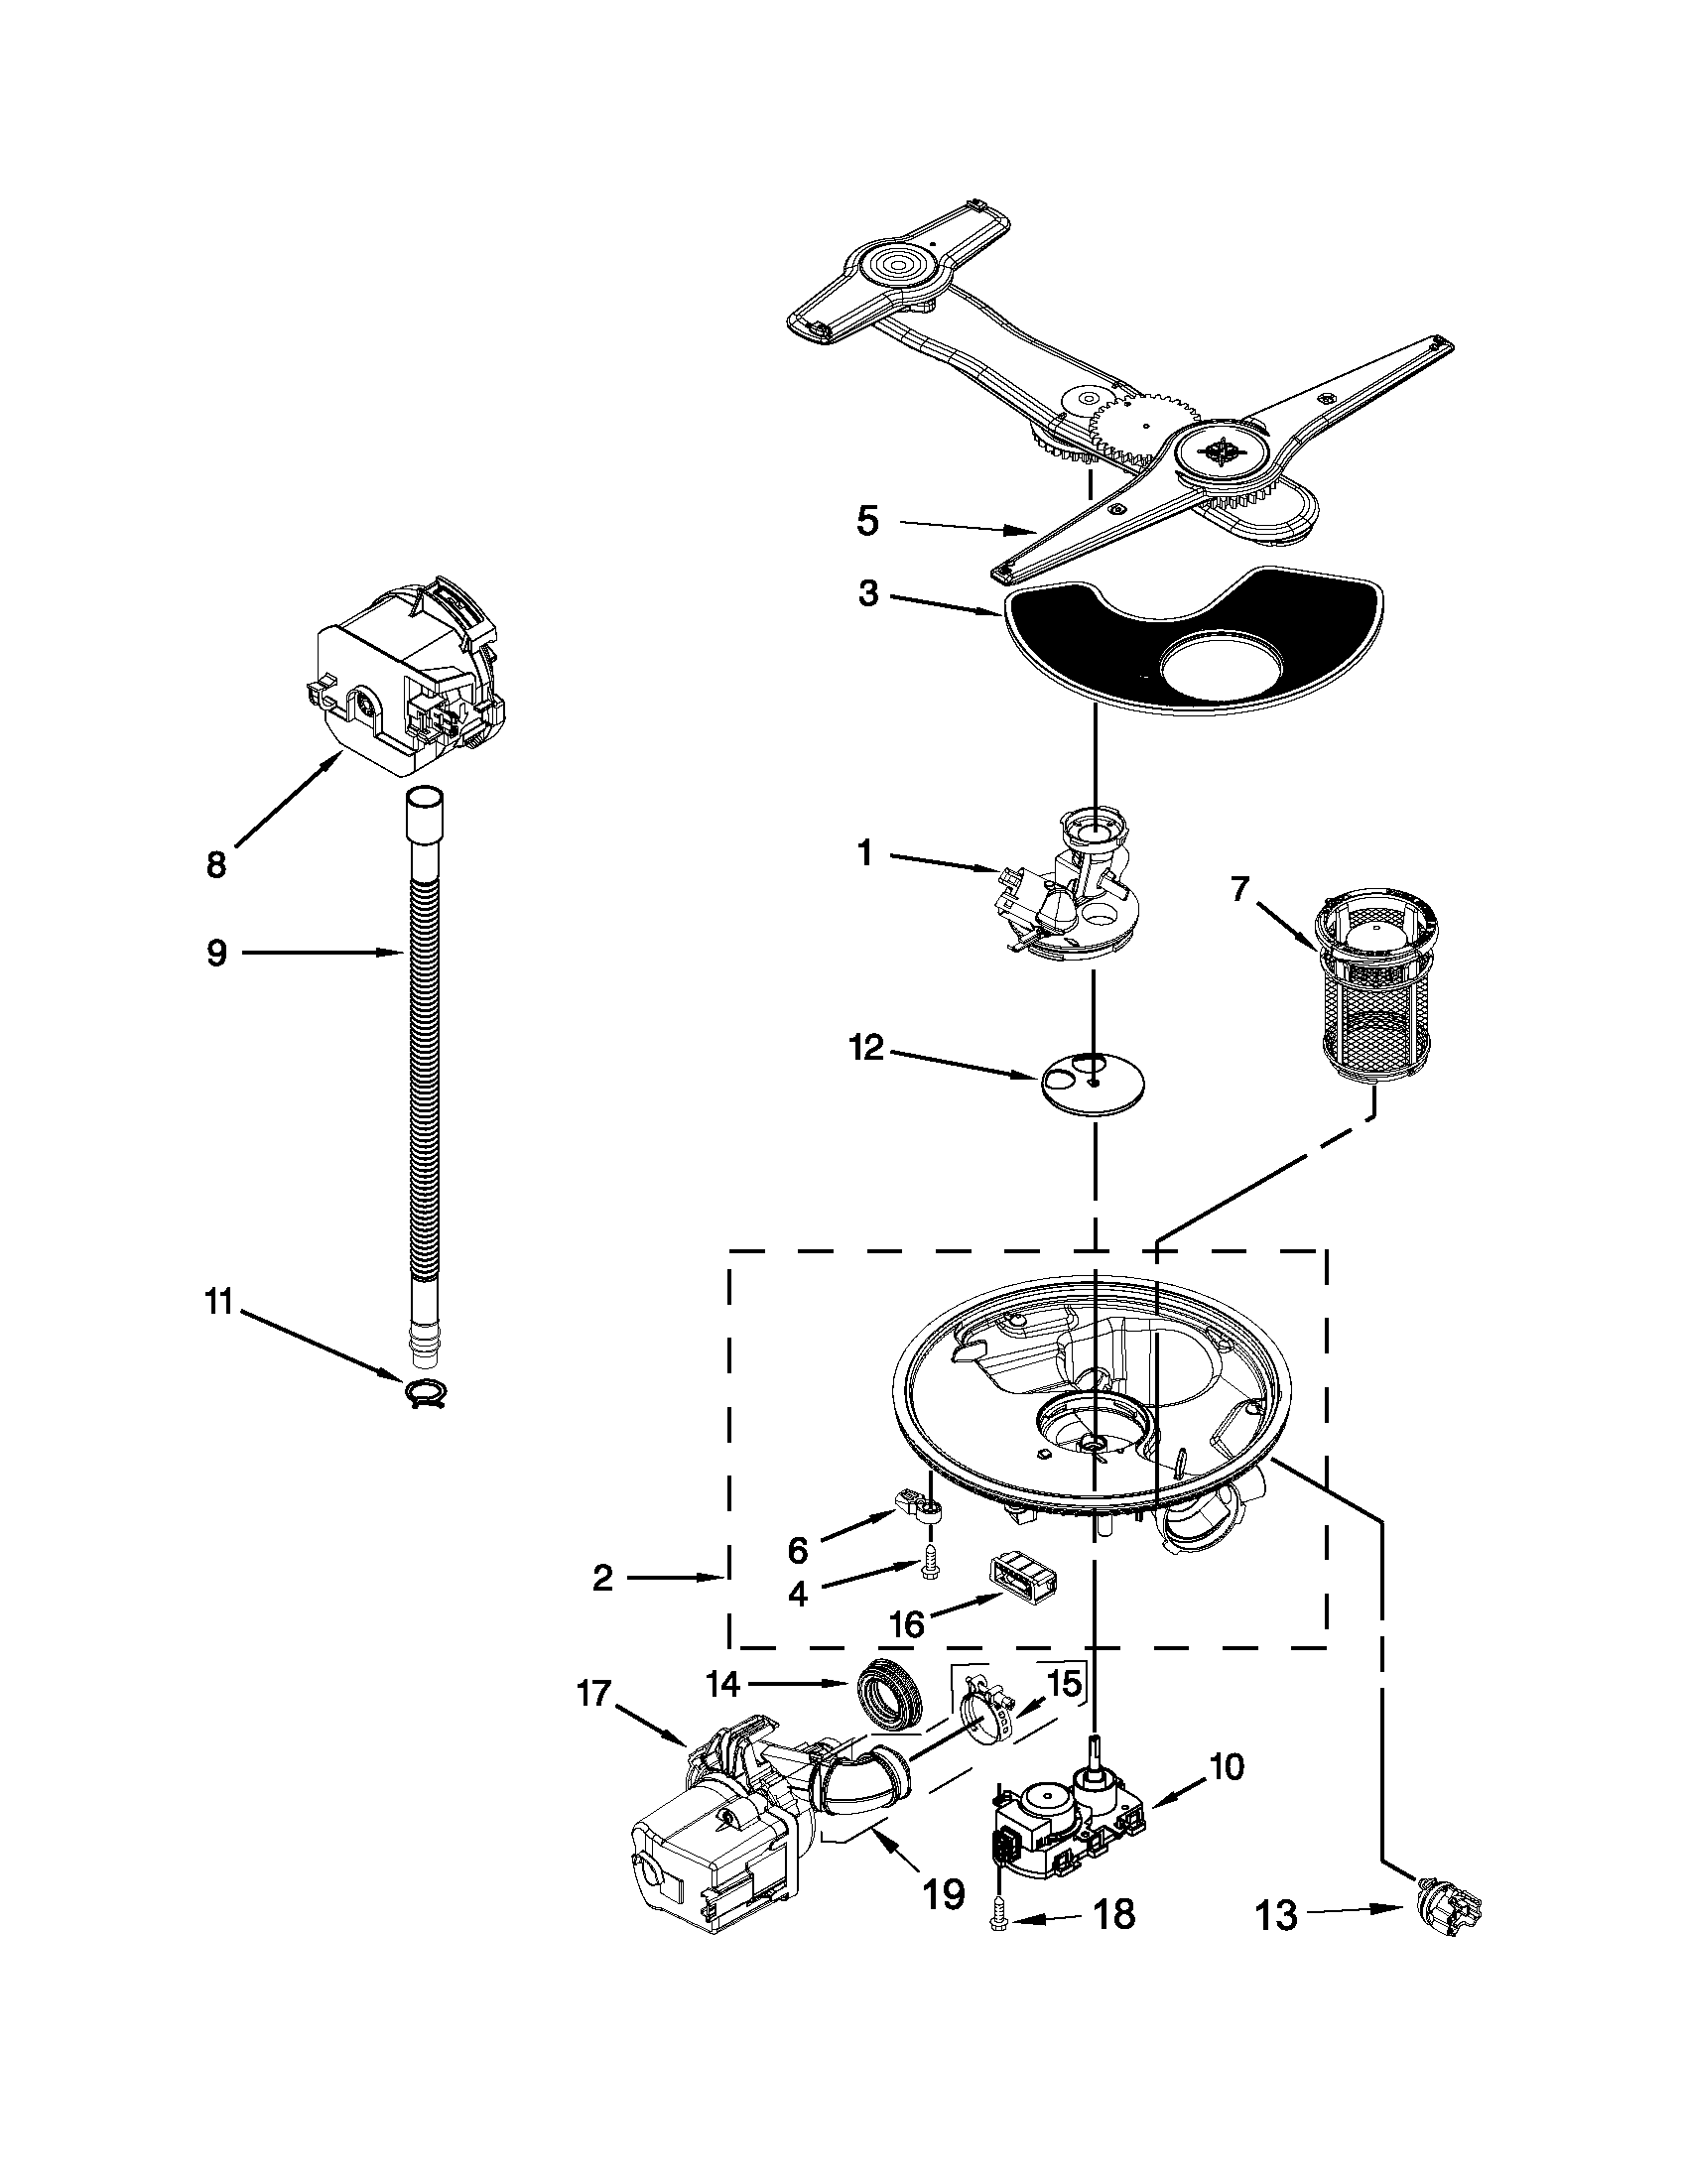 Kenmore Dishwasher Model 665 Parts Diagram Wiring Diagram